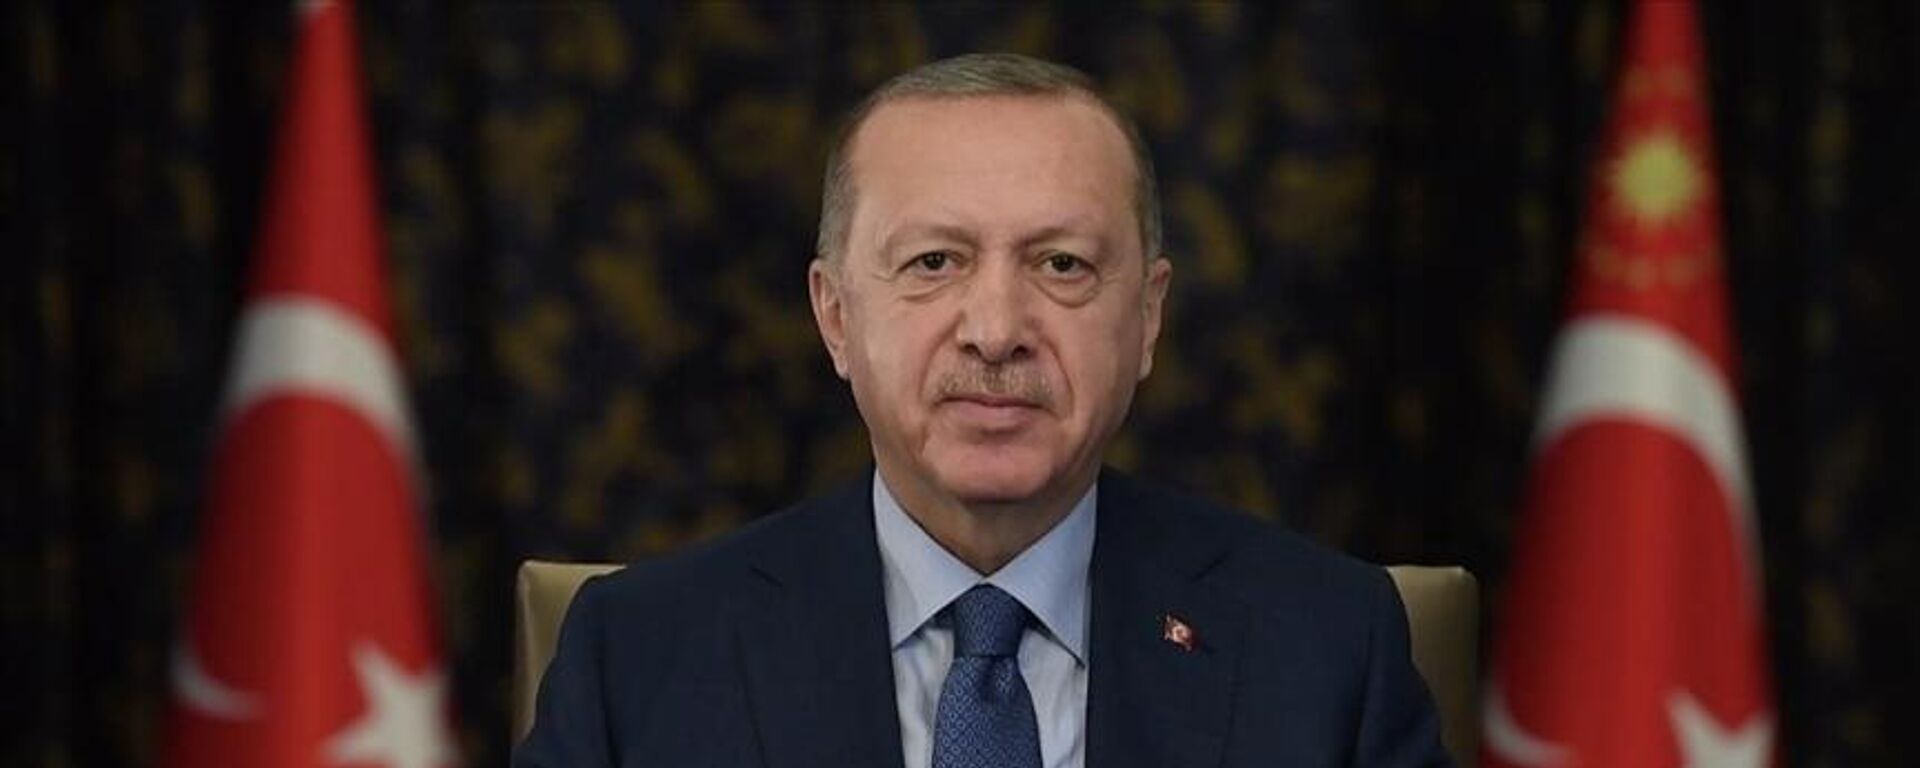 Cumhurbaşkanı Erdoğan: Önümüzde büyük ve güçlü Türkiye'yi inşa edeceğimiz bir dönem var - Sputnik Türkiye, 1920, 11.09.2021